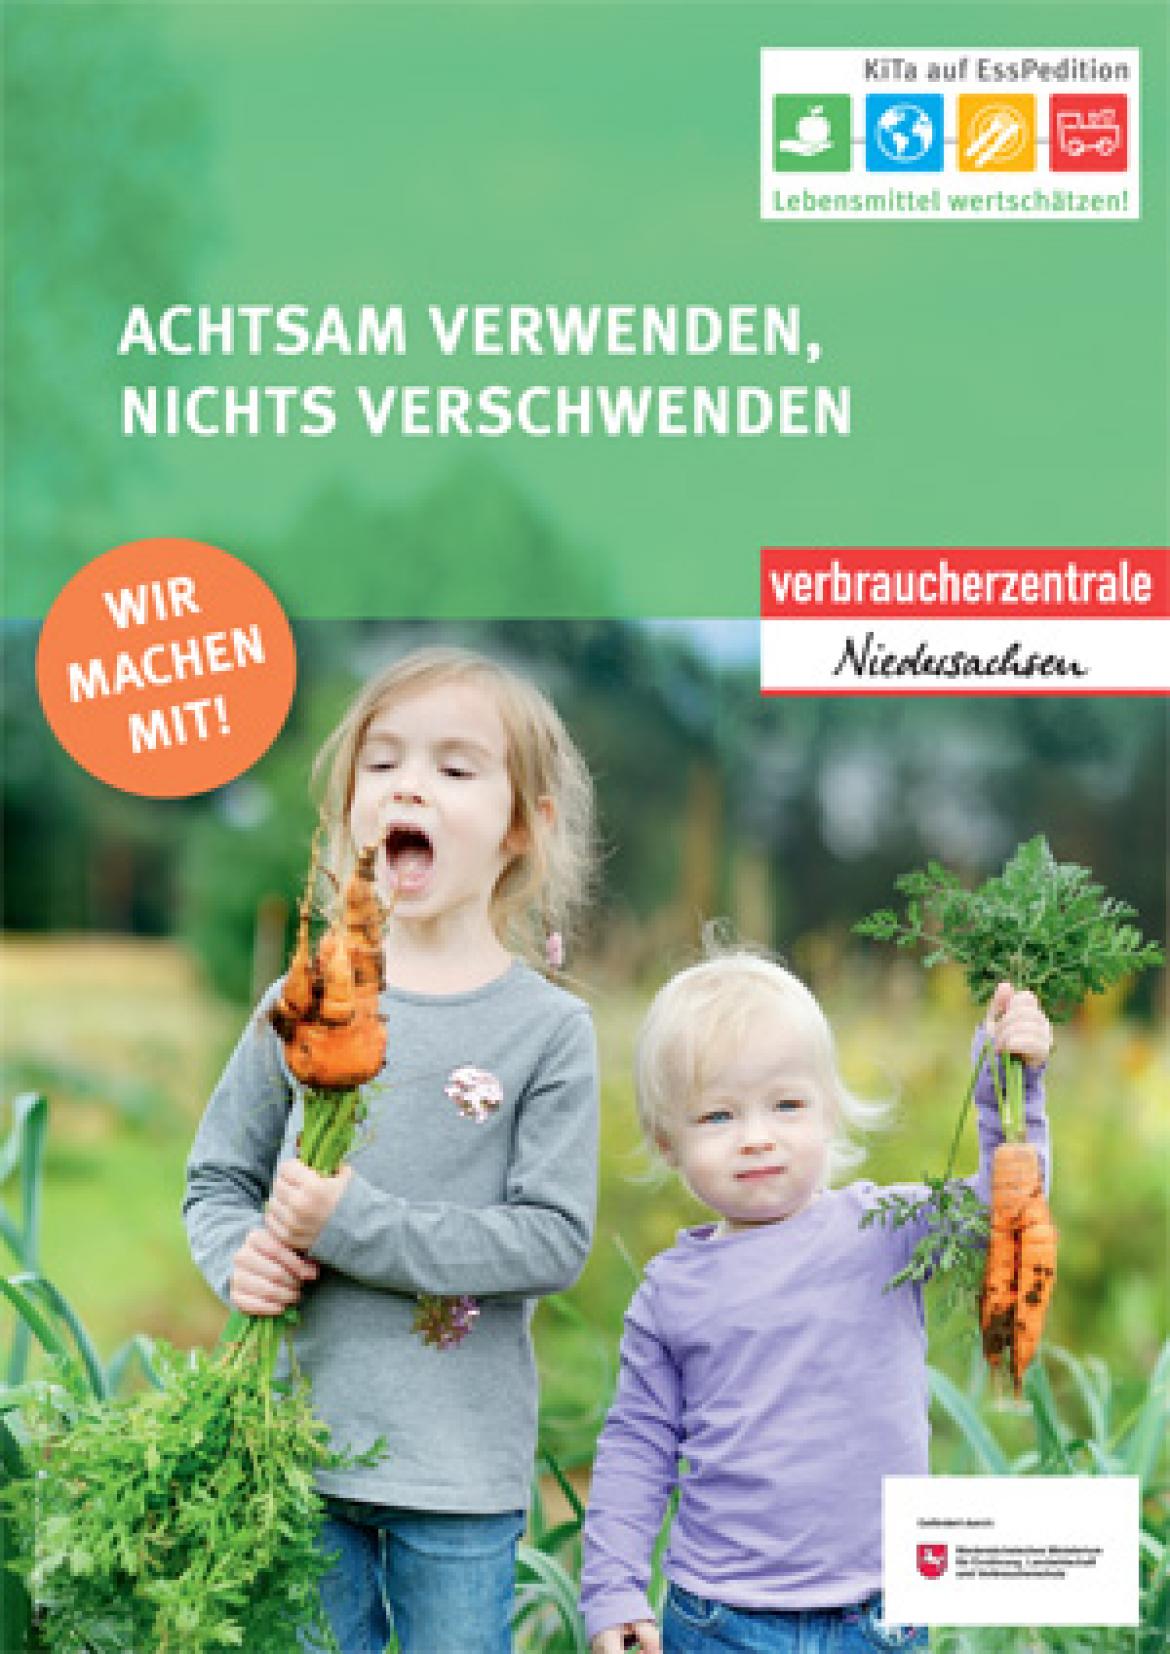 Plakat zu Lebensmittelwertschätzung mit zwei Kindern, die Karotten halten.